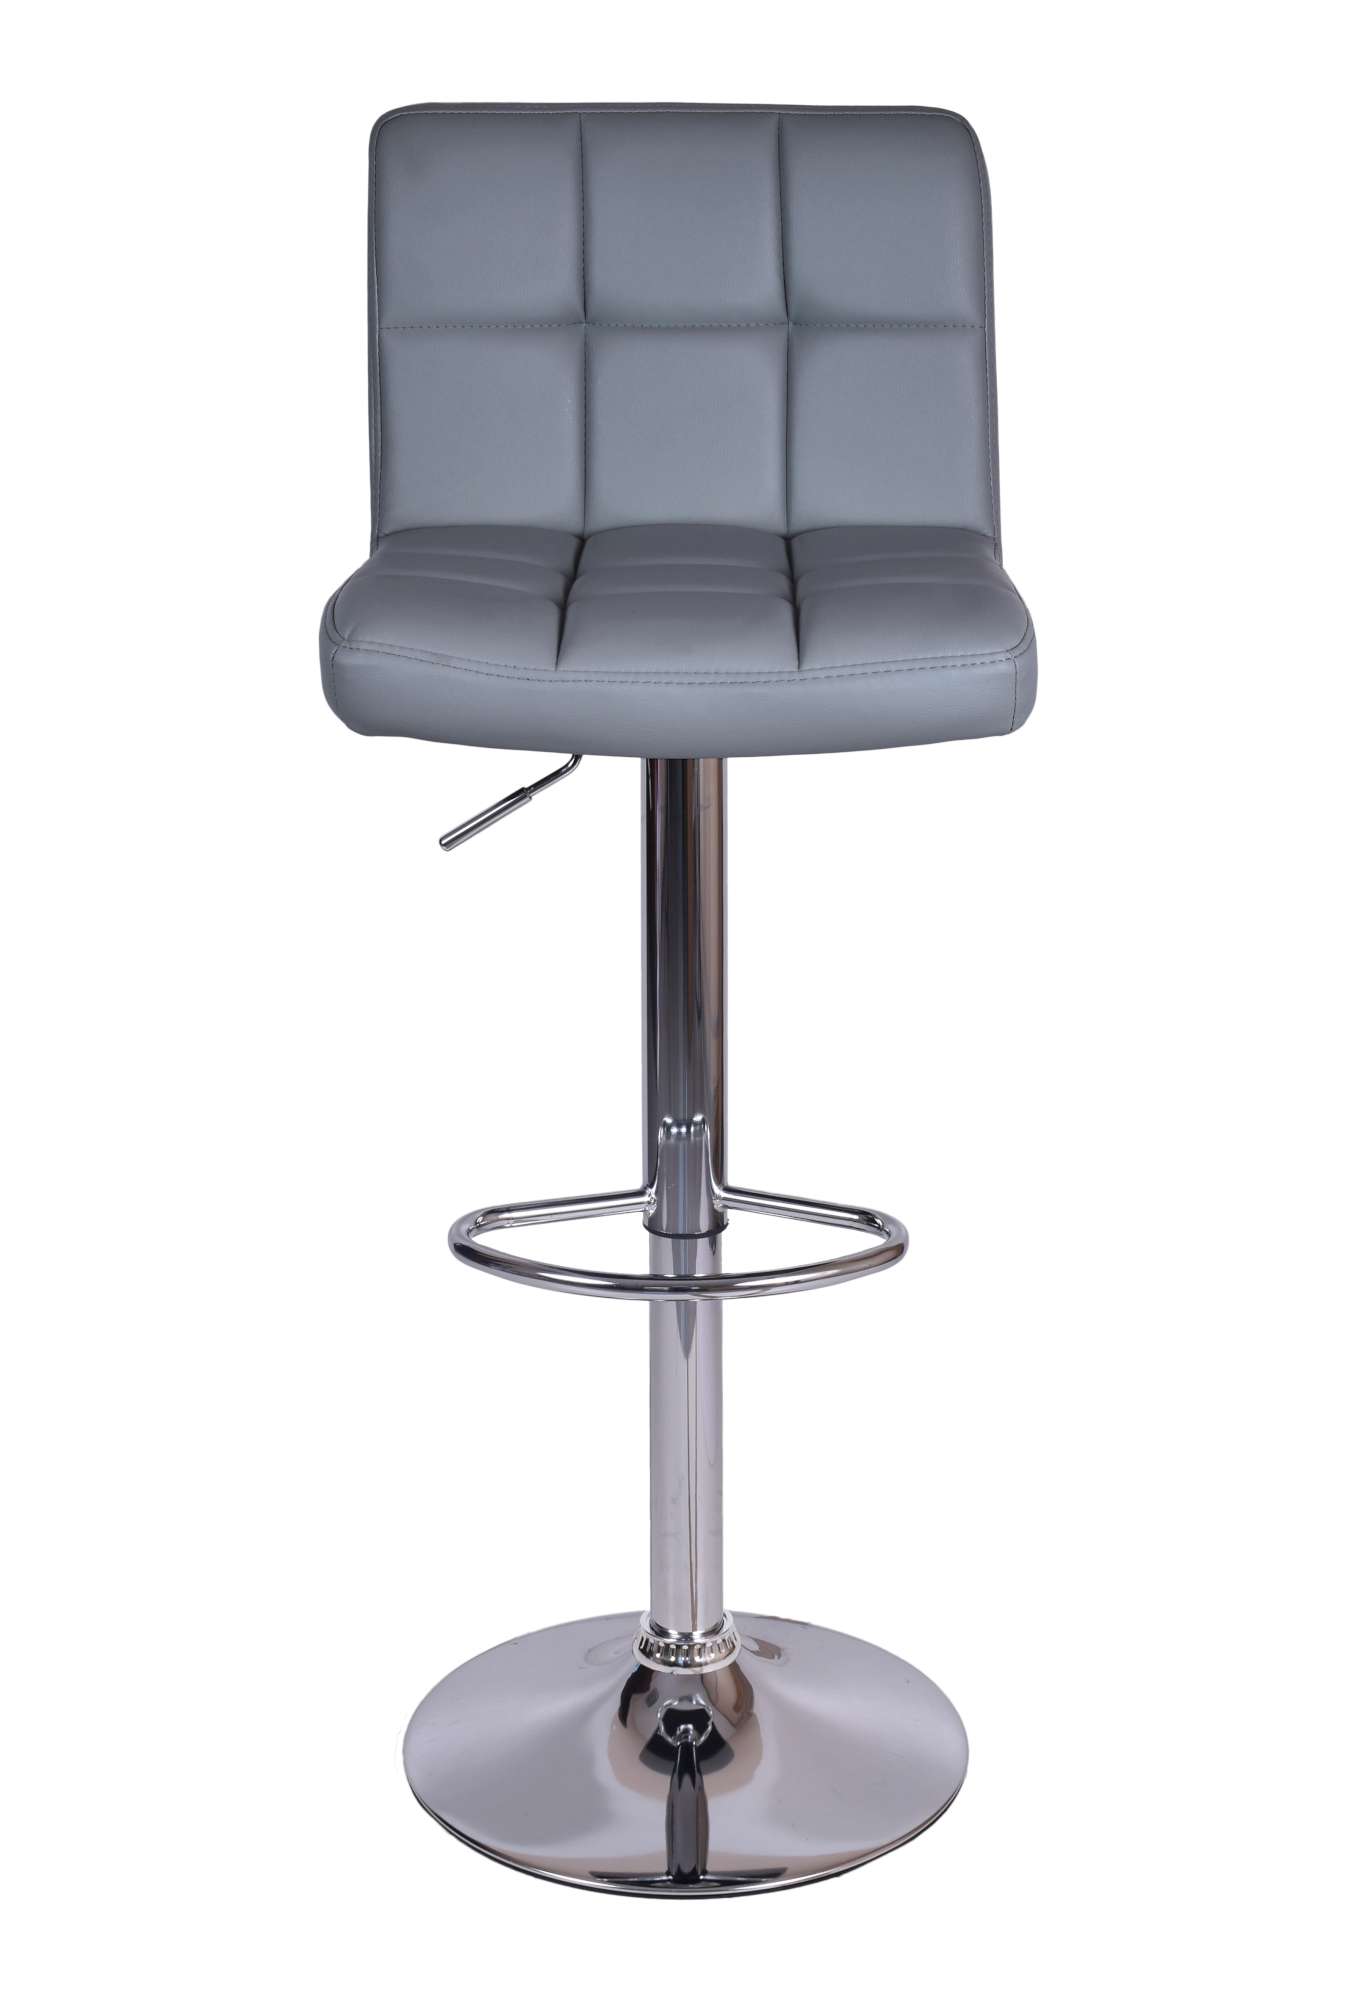 hoker barowy krzesło barowe arako wymiary